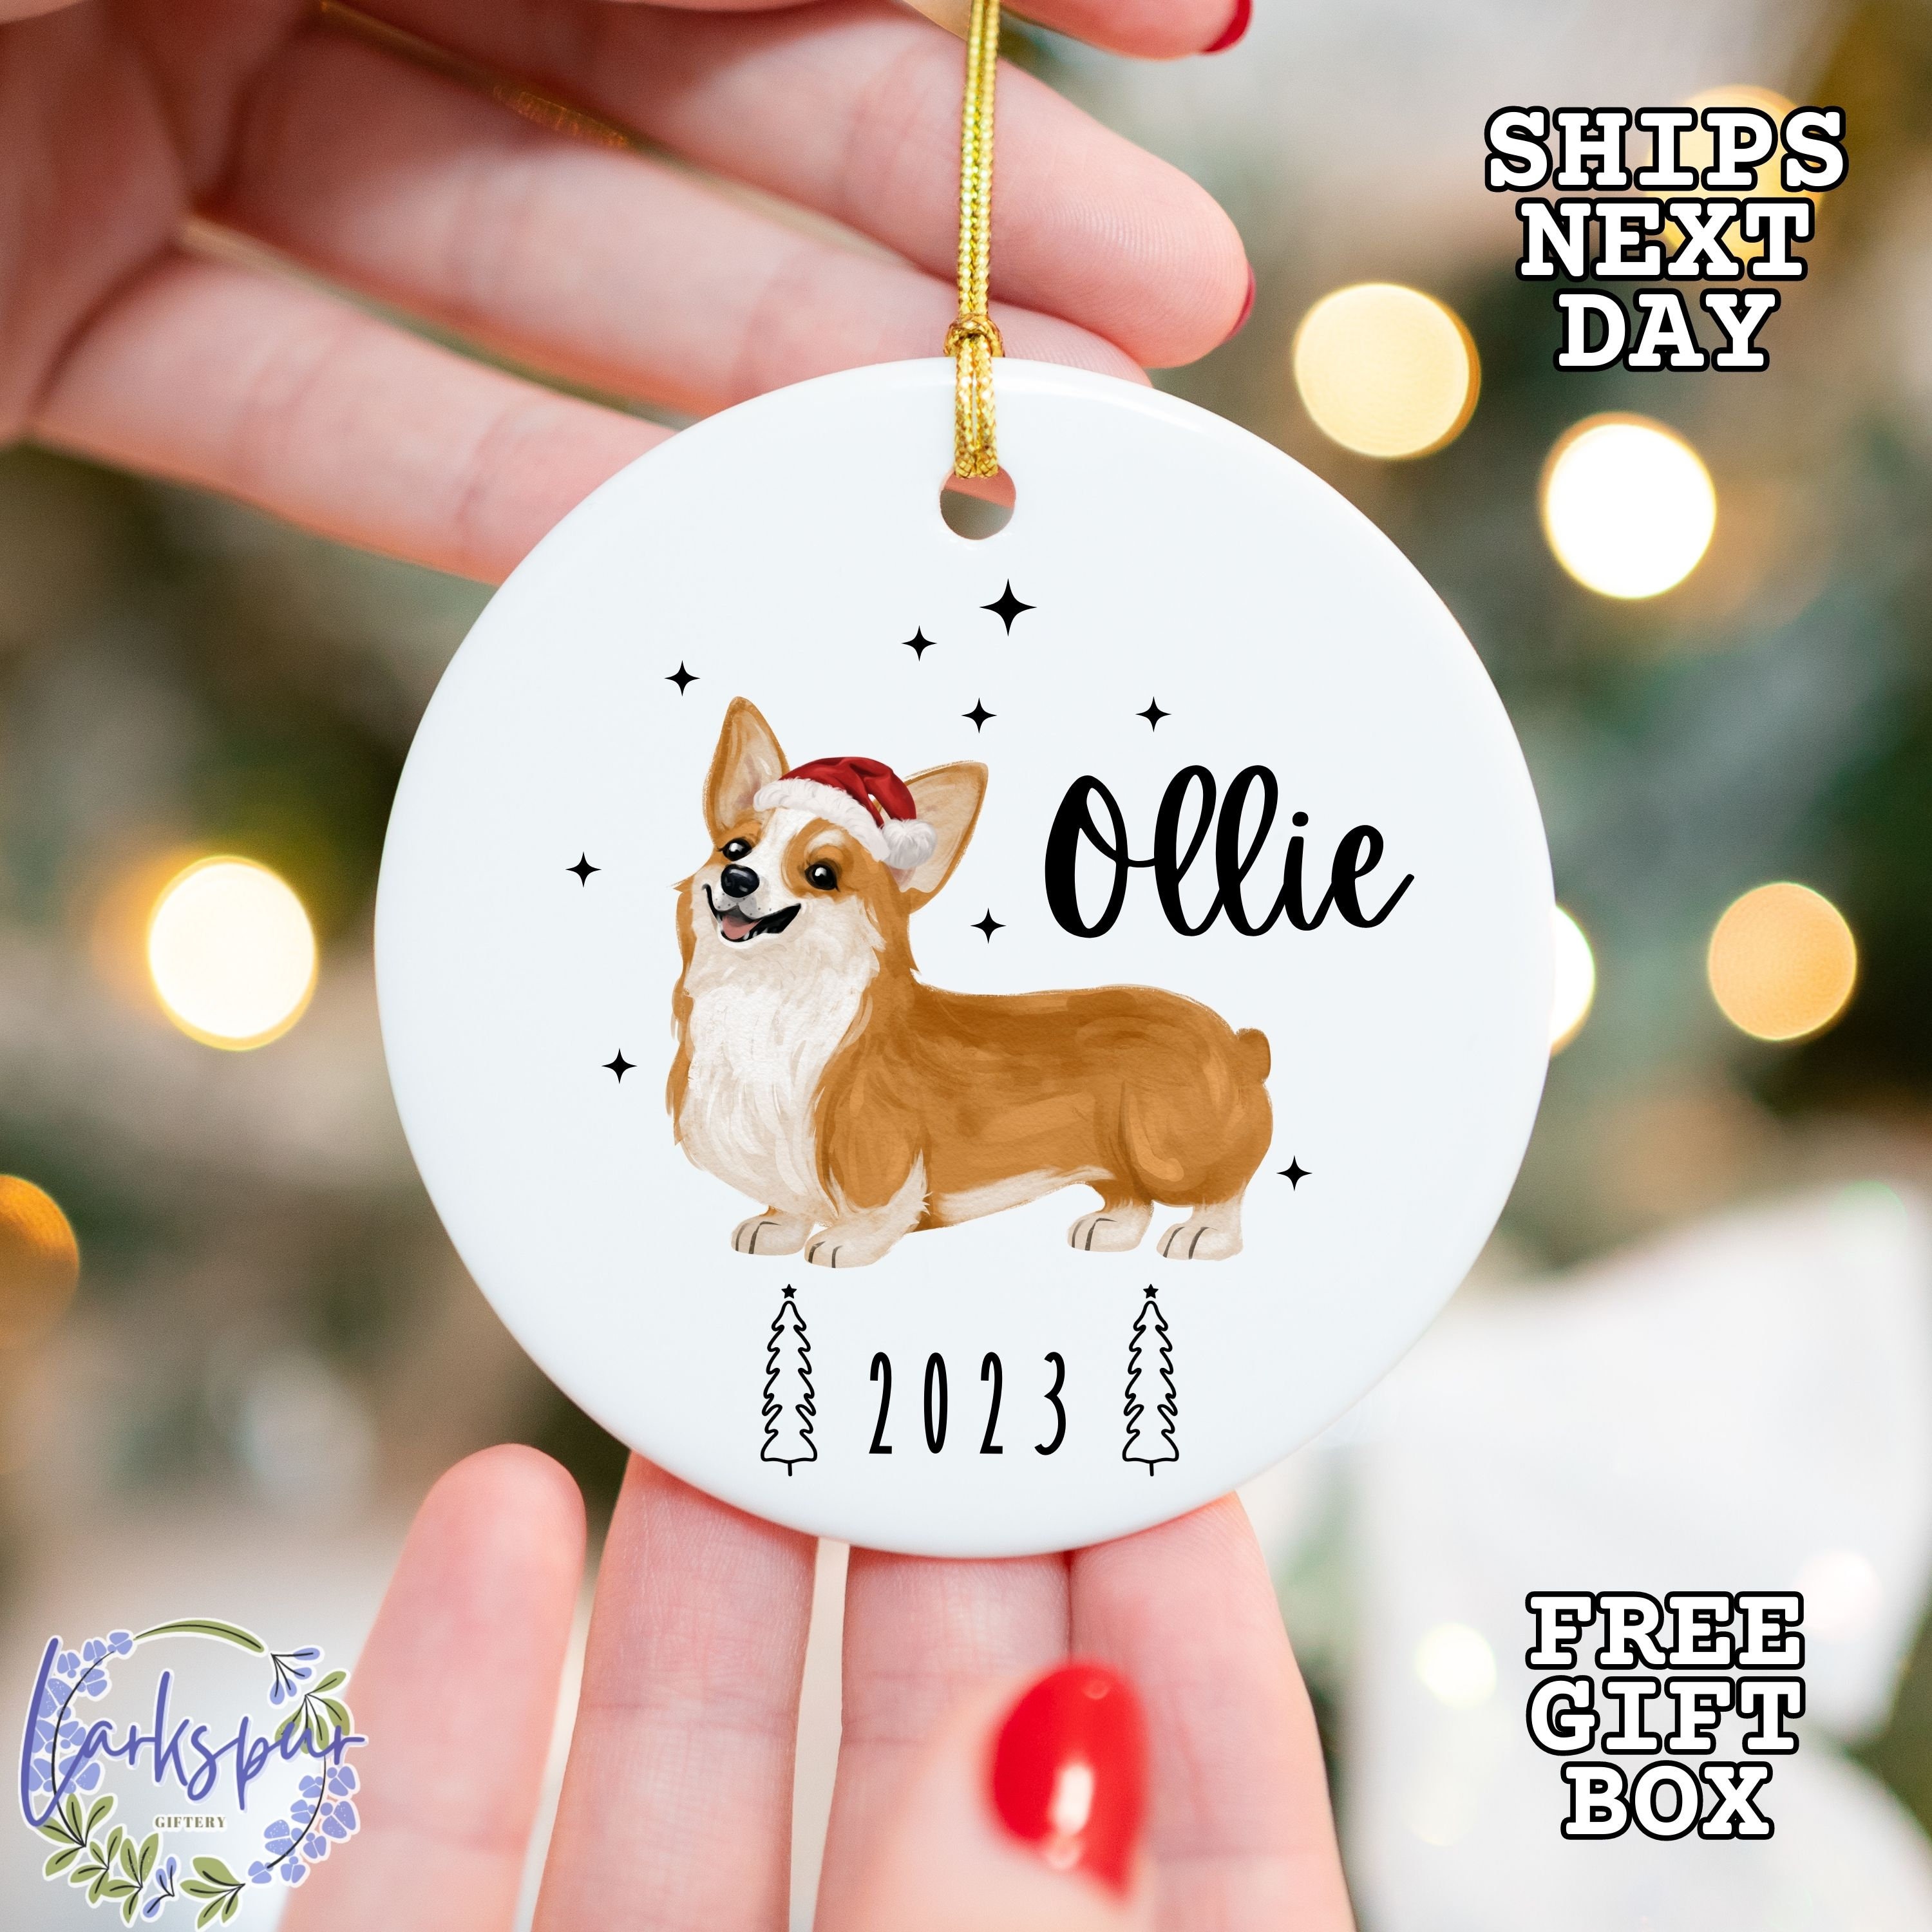 Corgi Dog Christmas T-shirt, Merry Corgmas, Gift For Dog Lovers, Dog T –  Famhose